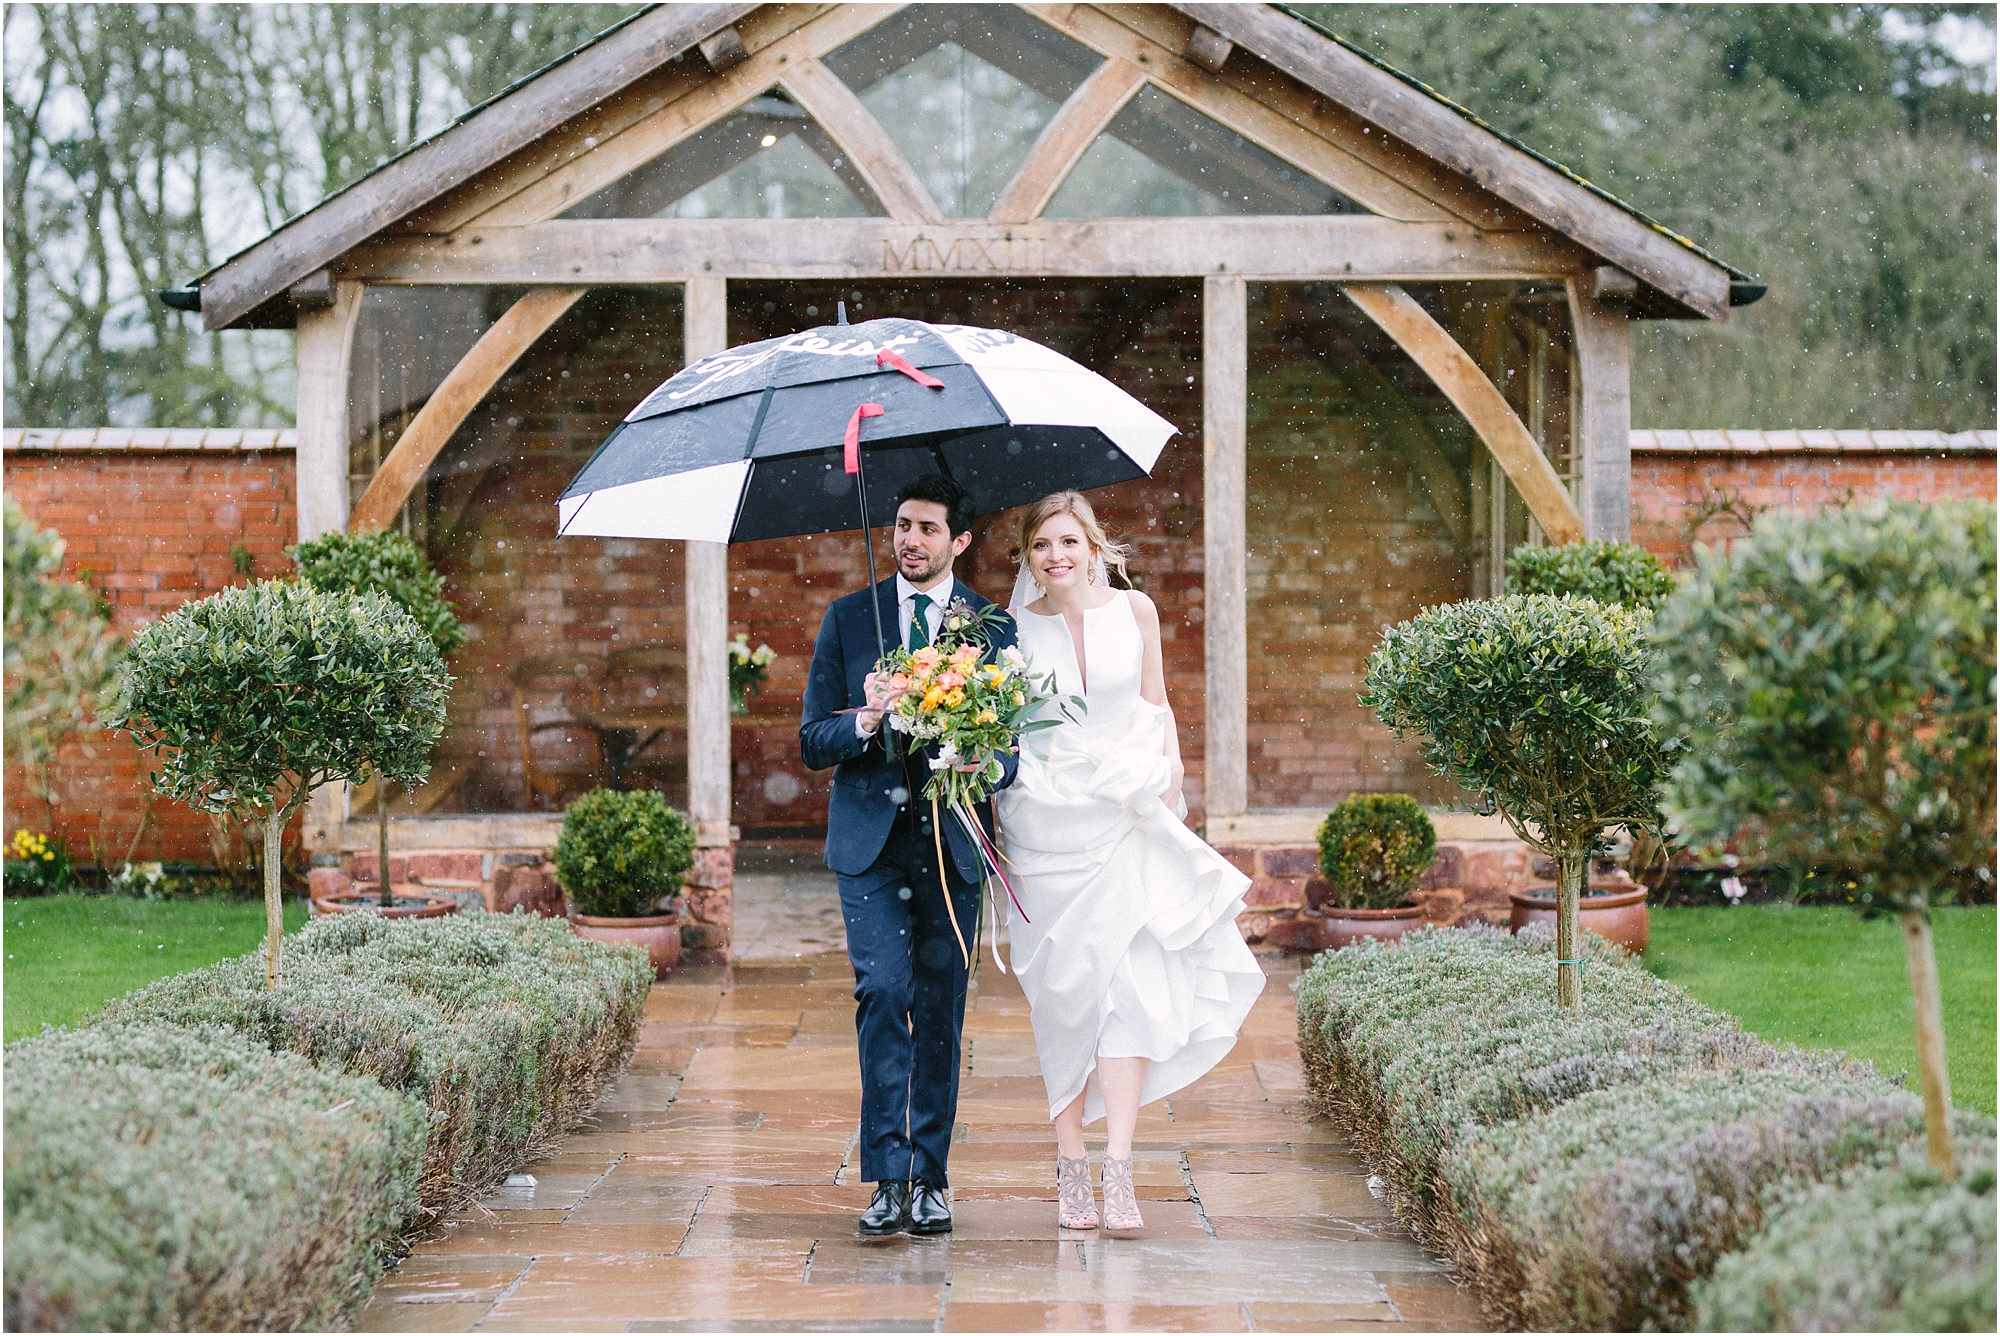 Bride and groom walking with umbrella at Upton Barn Wedding Venue